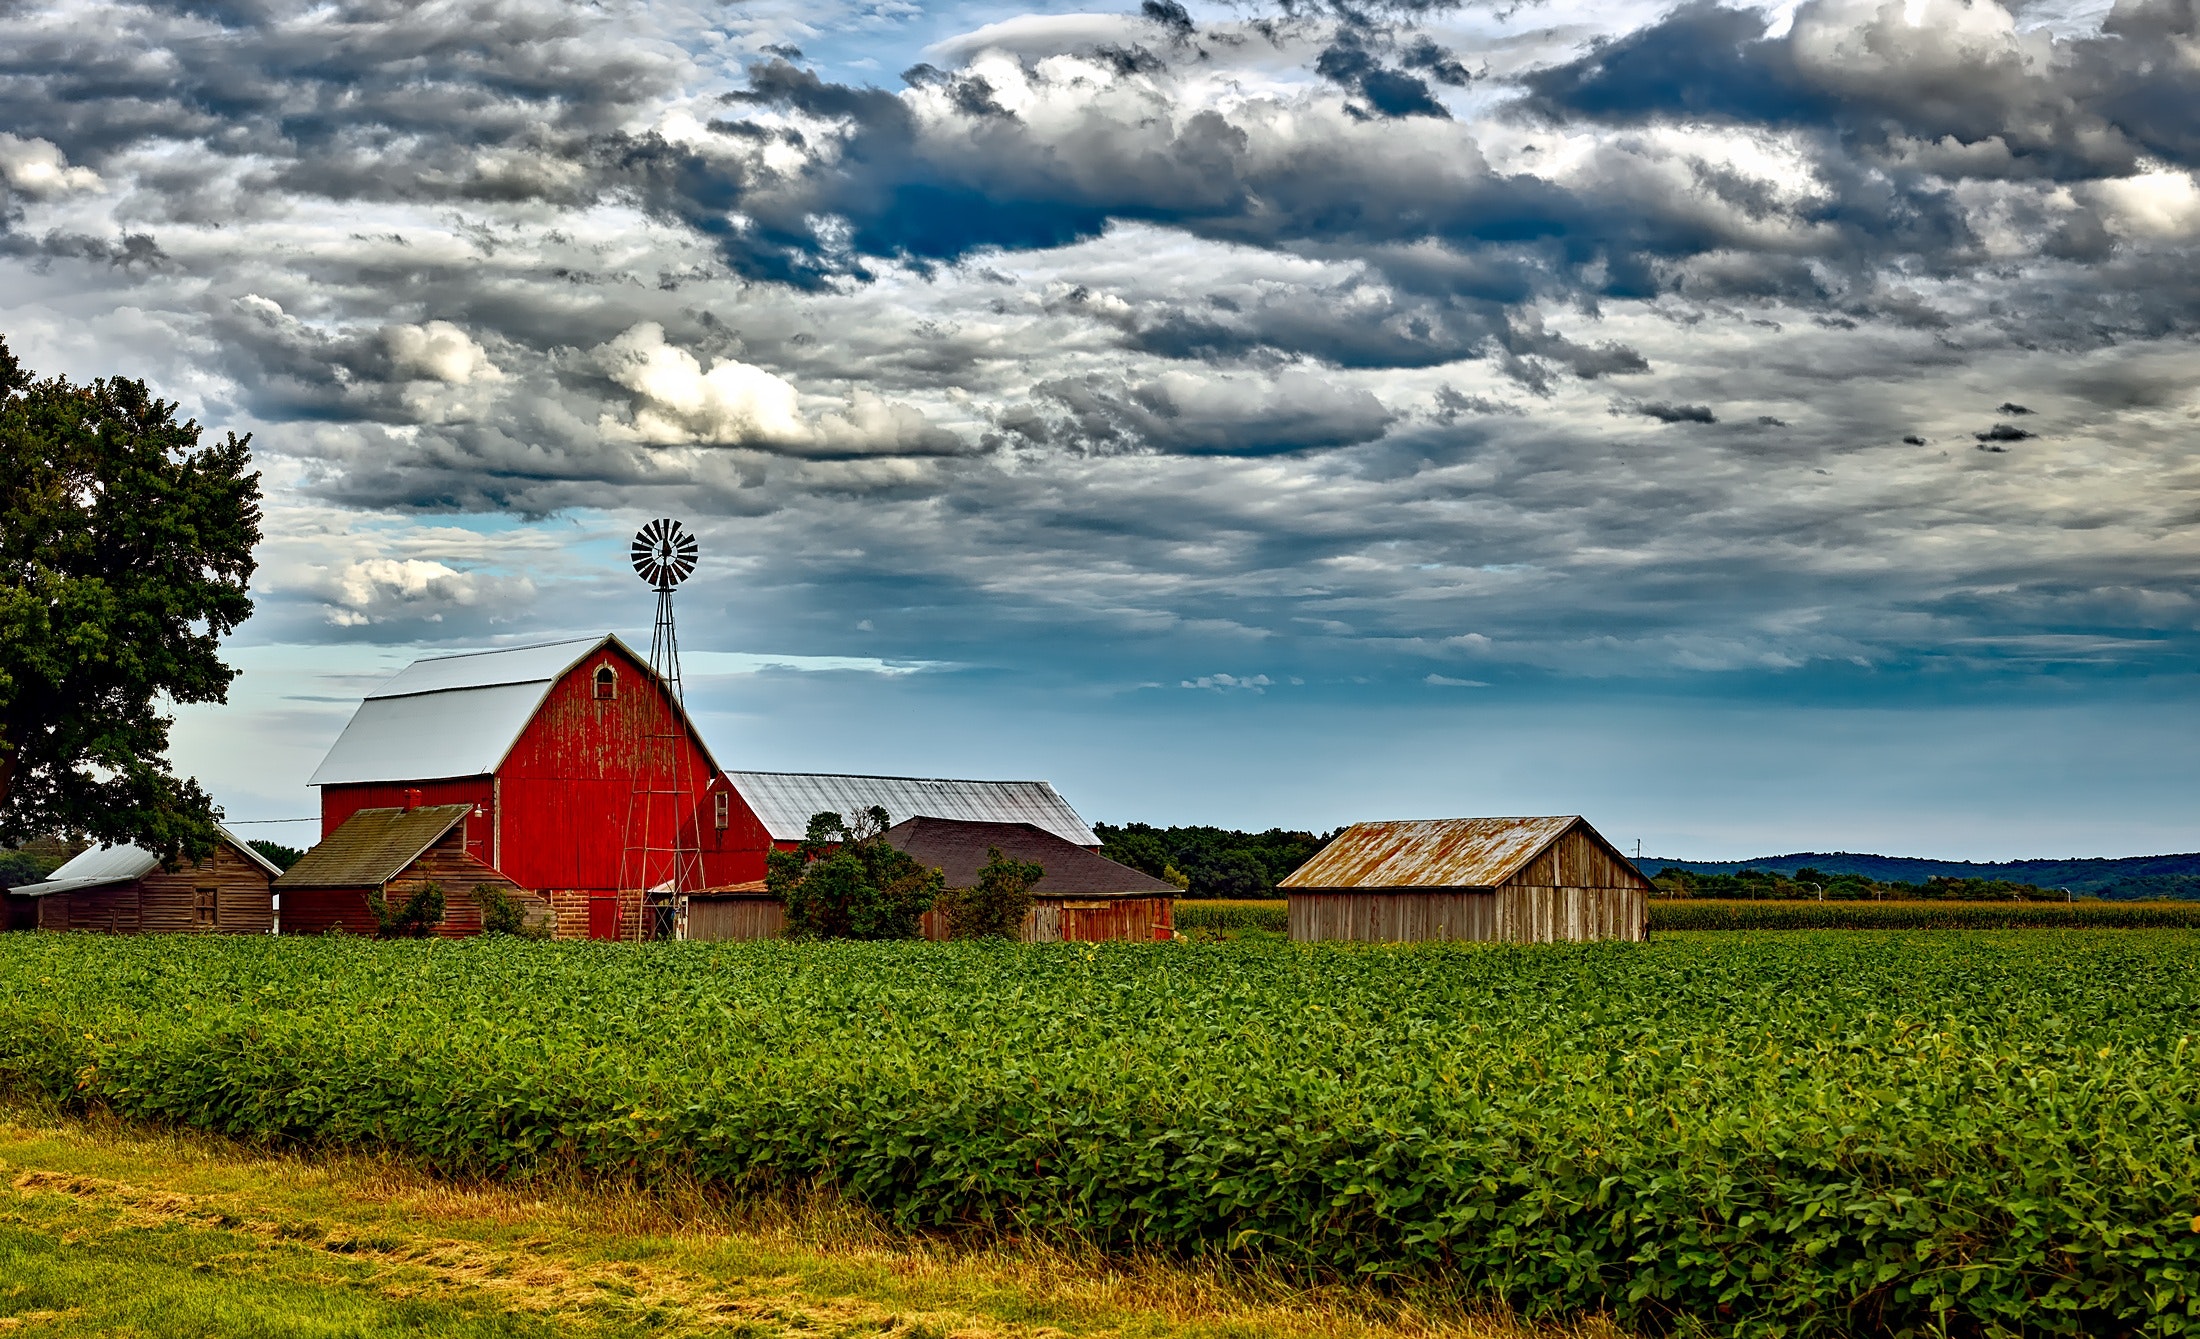 A red barn in a farmer's field